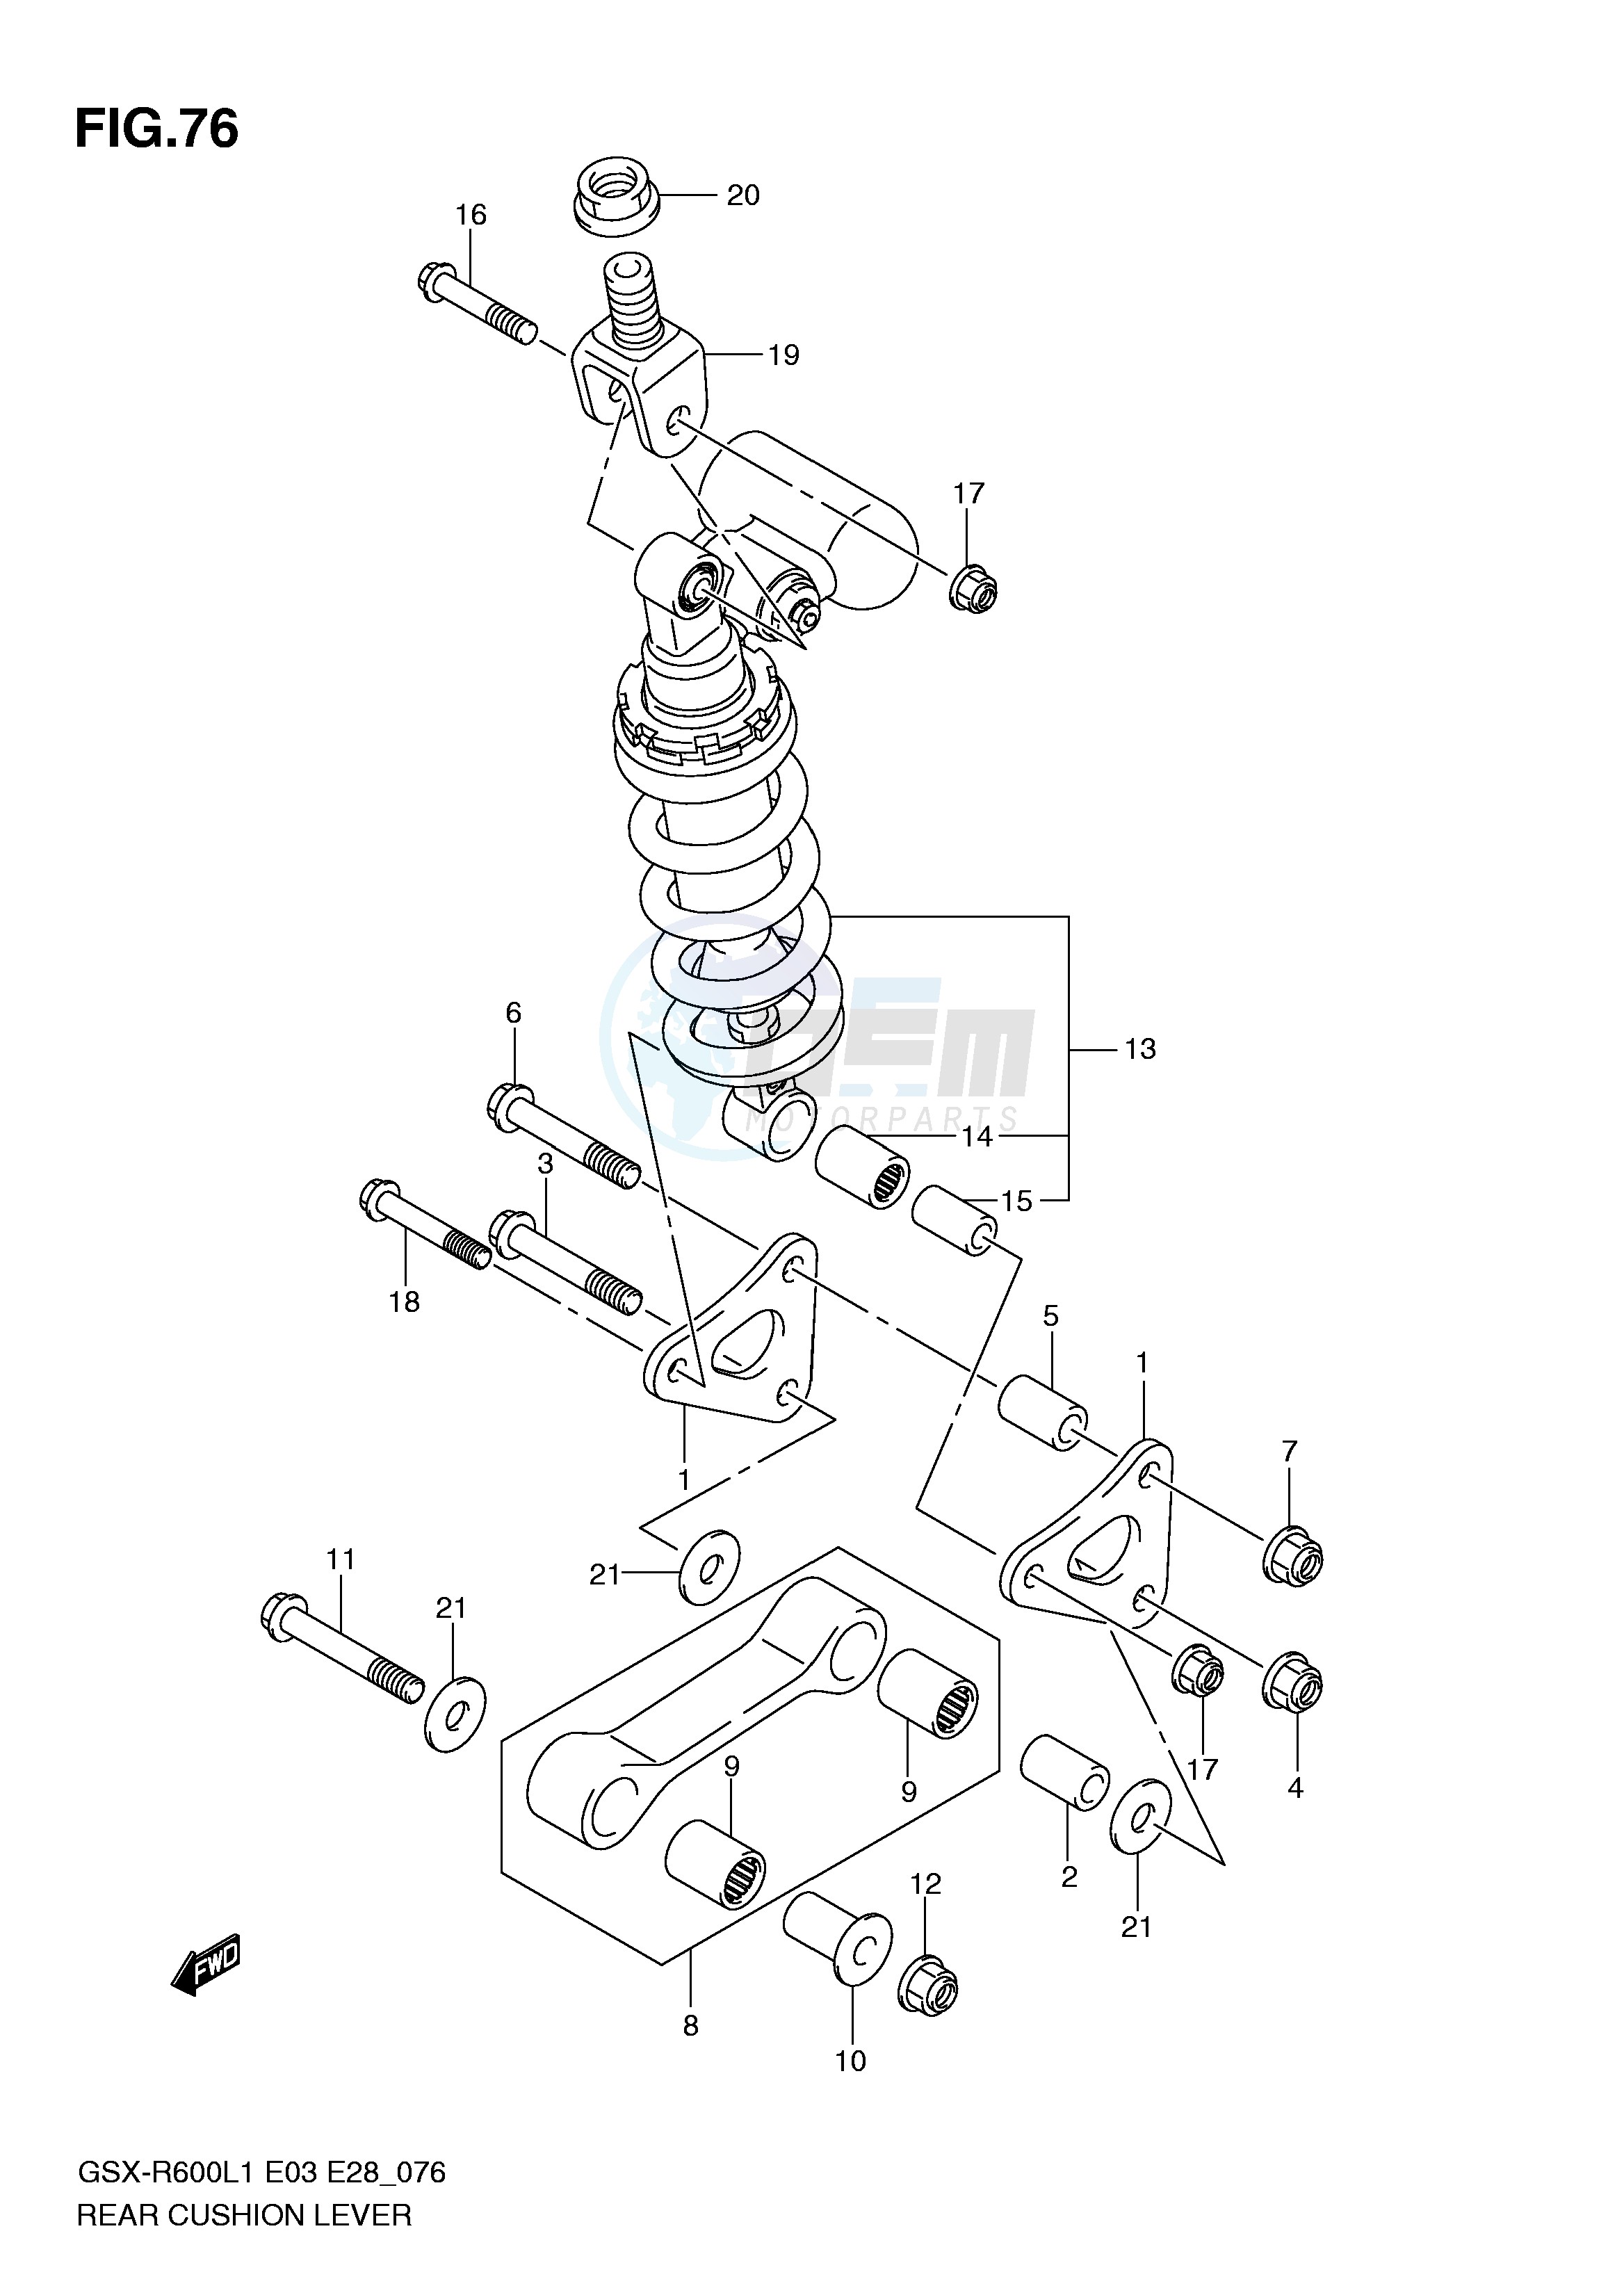 REAR CUSHION LEVER (GSX-R600L1 E33) blueprint